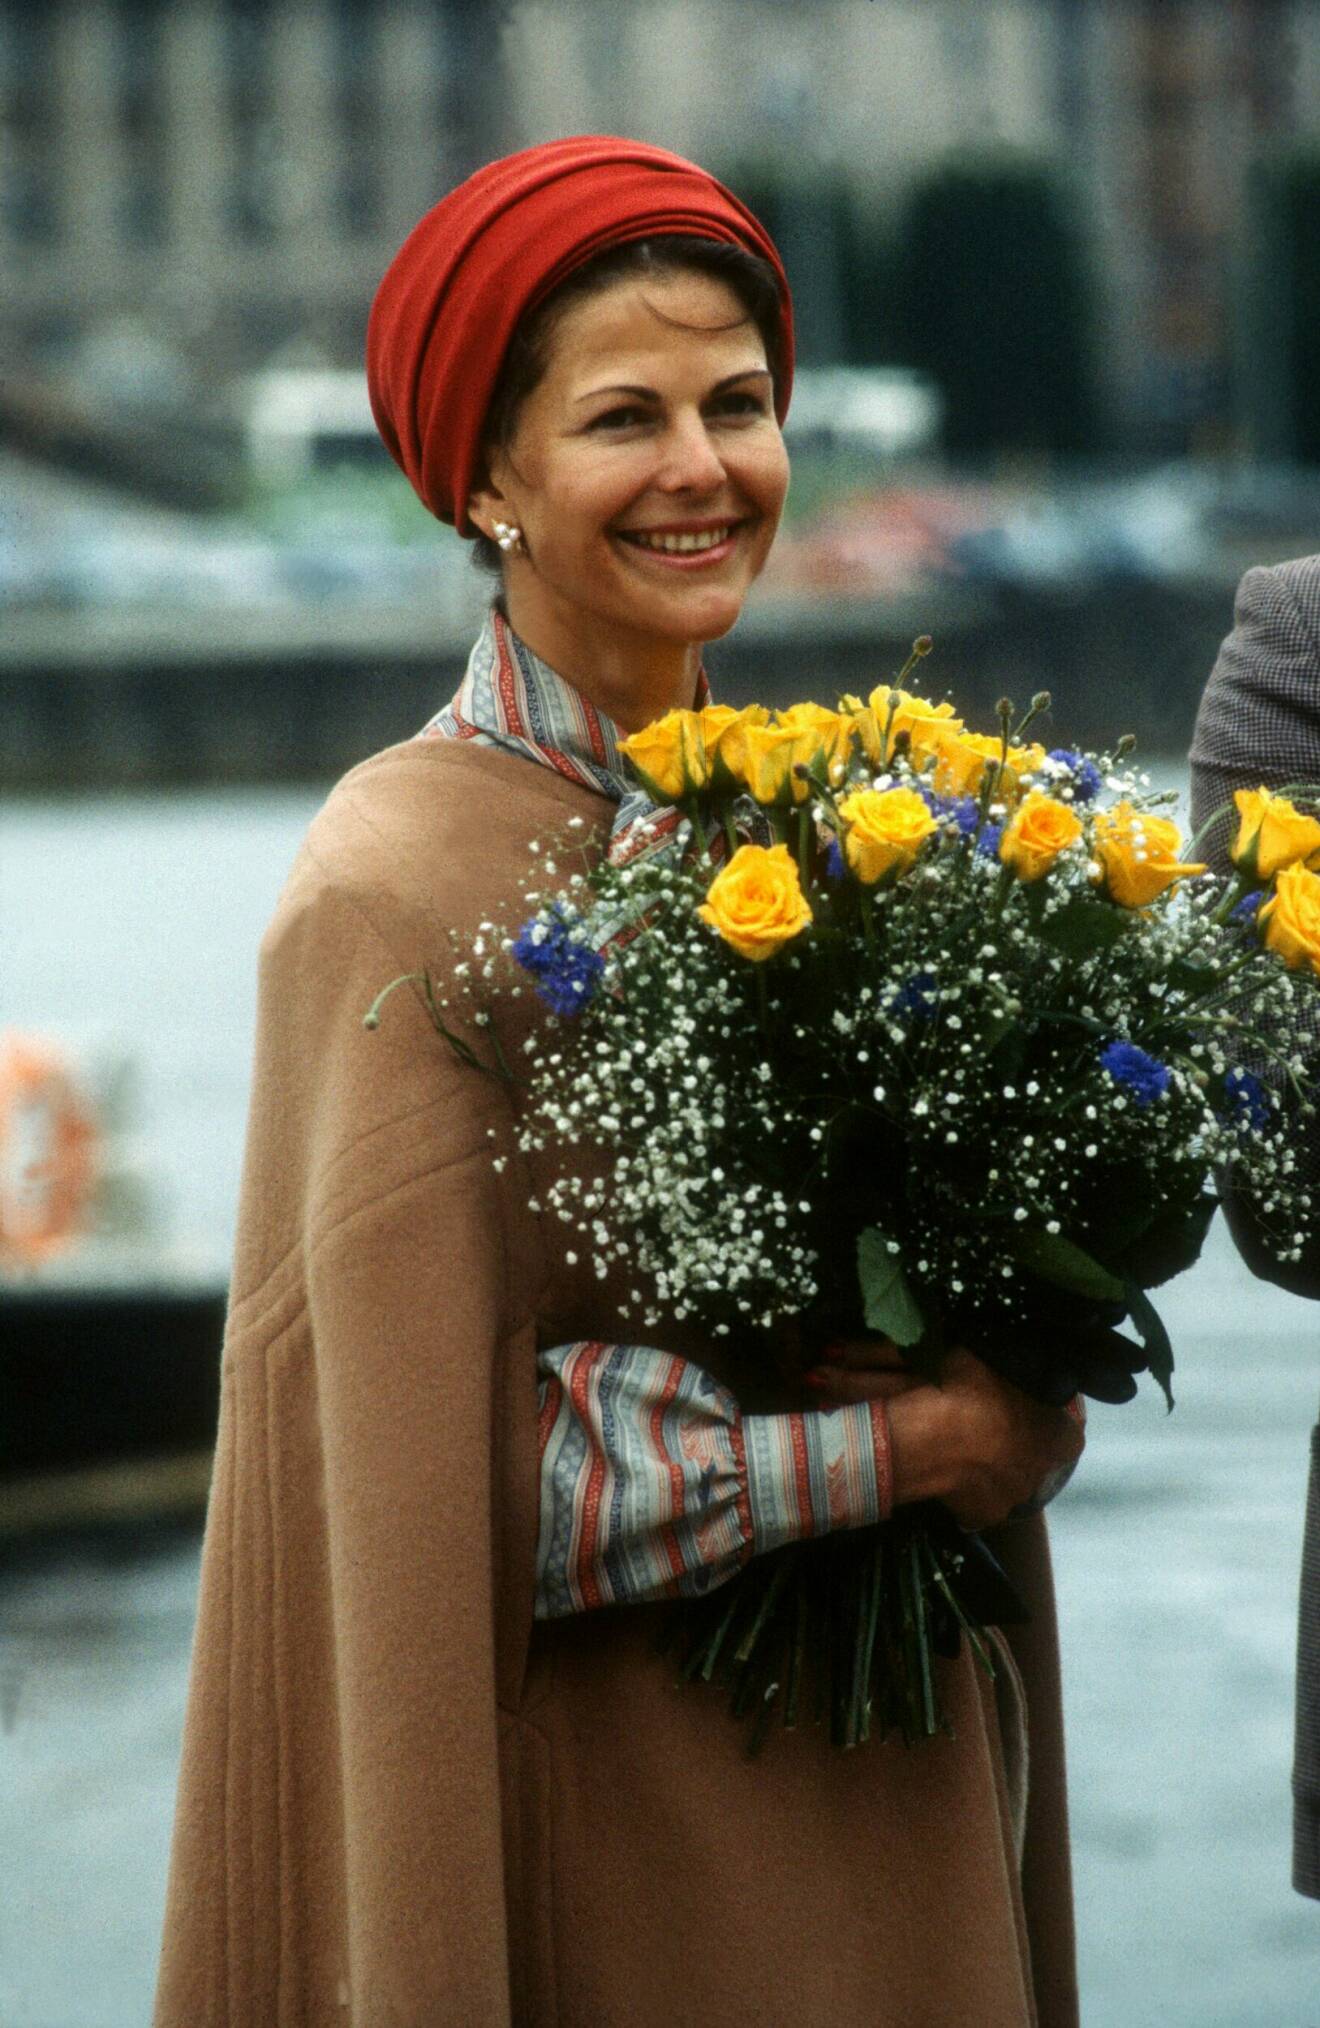 Drottning Silvia i en röd hatt och beige cape.